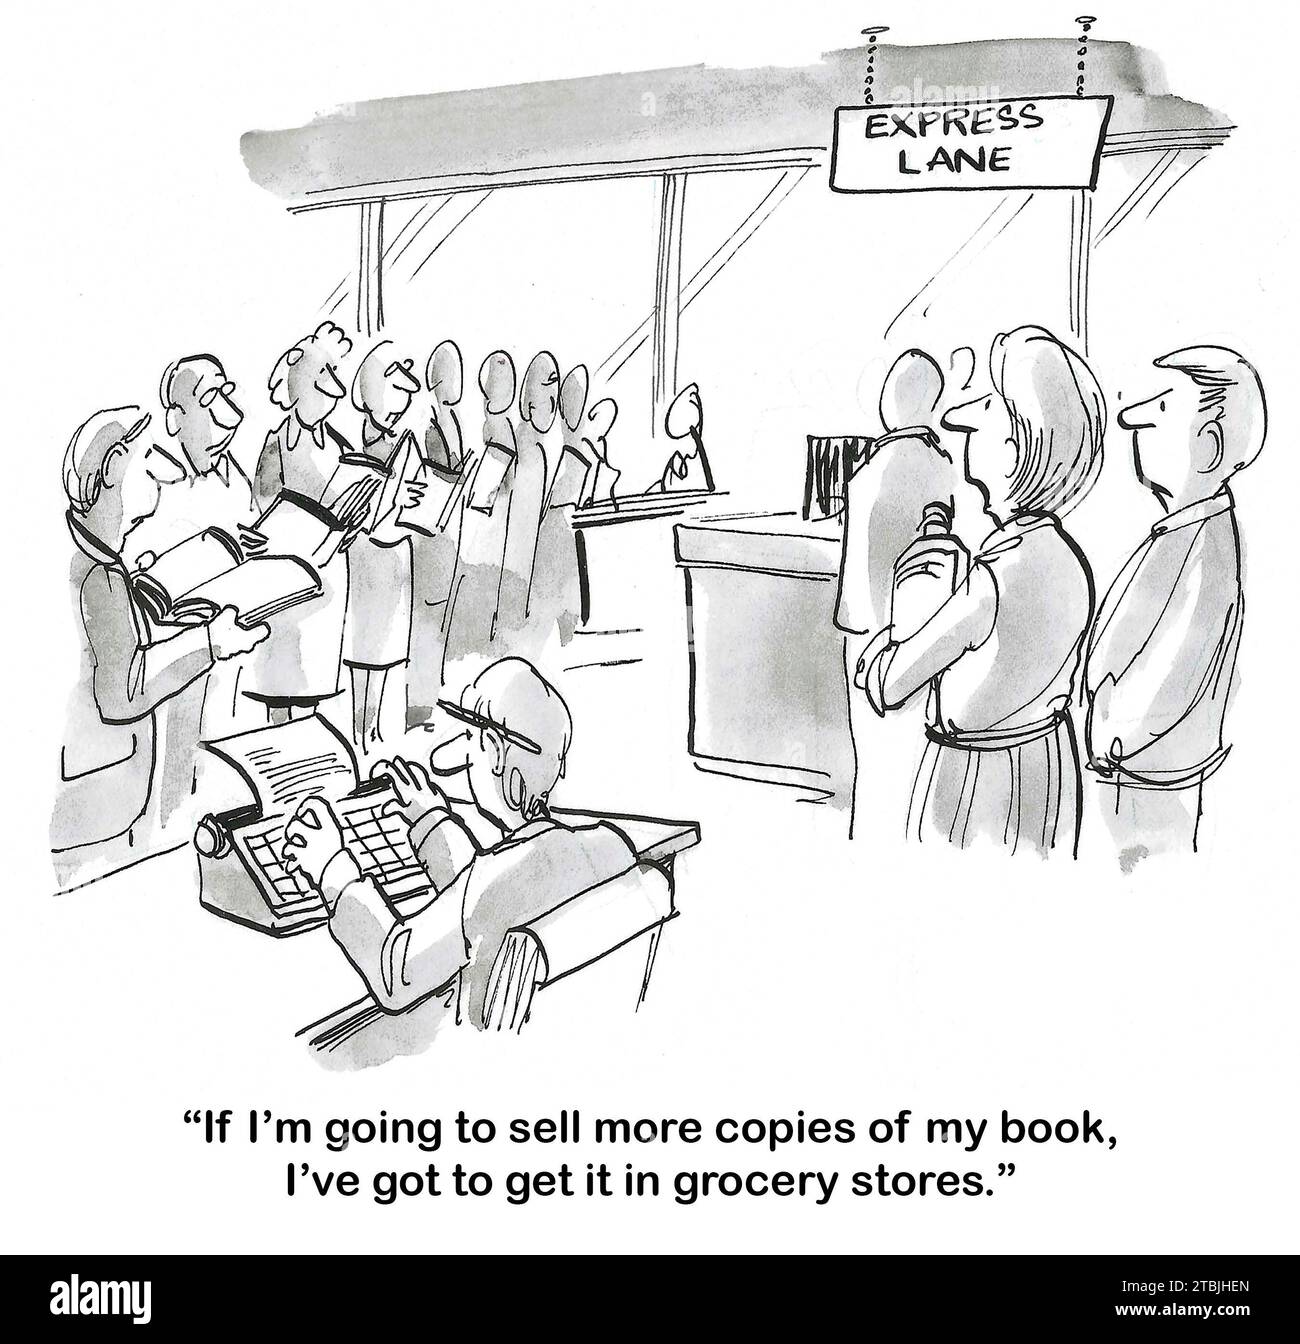 S&W-Cartoon einer Autorin, die Kunden beim Lesen von Zeitschriften im Gang der Lebensmittelkasse anmerkt und ihnen vorschlägt, mehr Bücher zu verkaufen, wenn sie verkauft werden Stockfoto